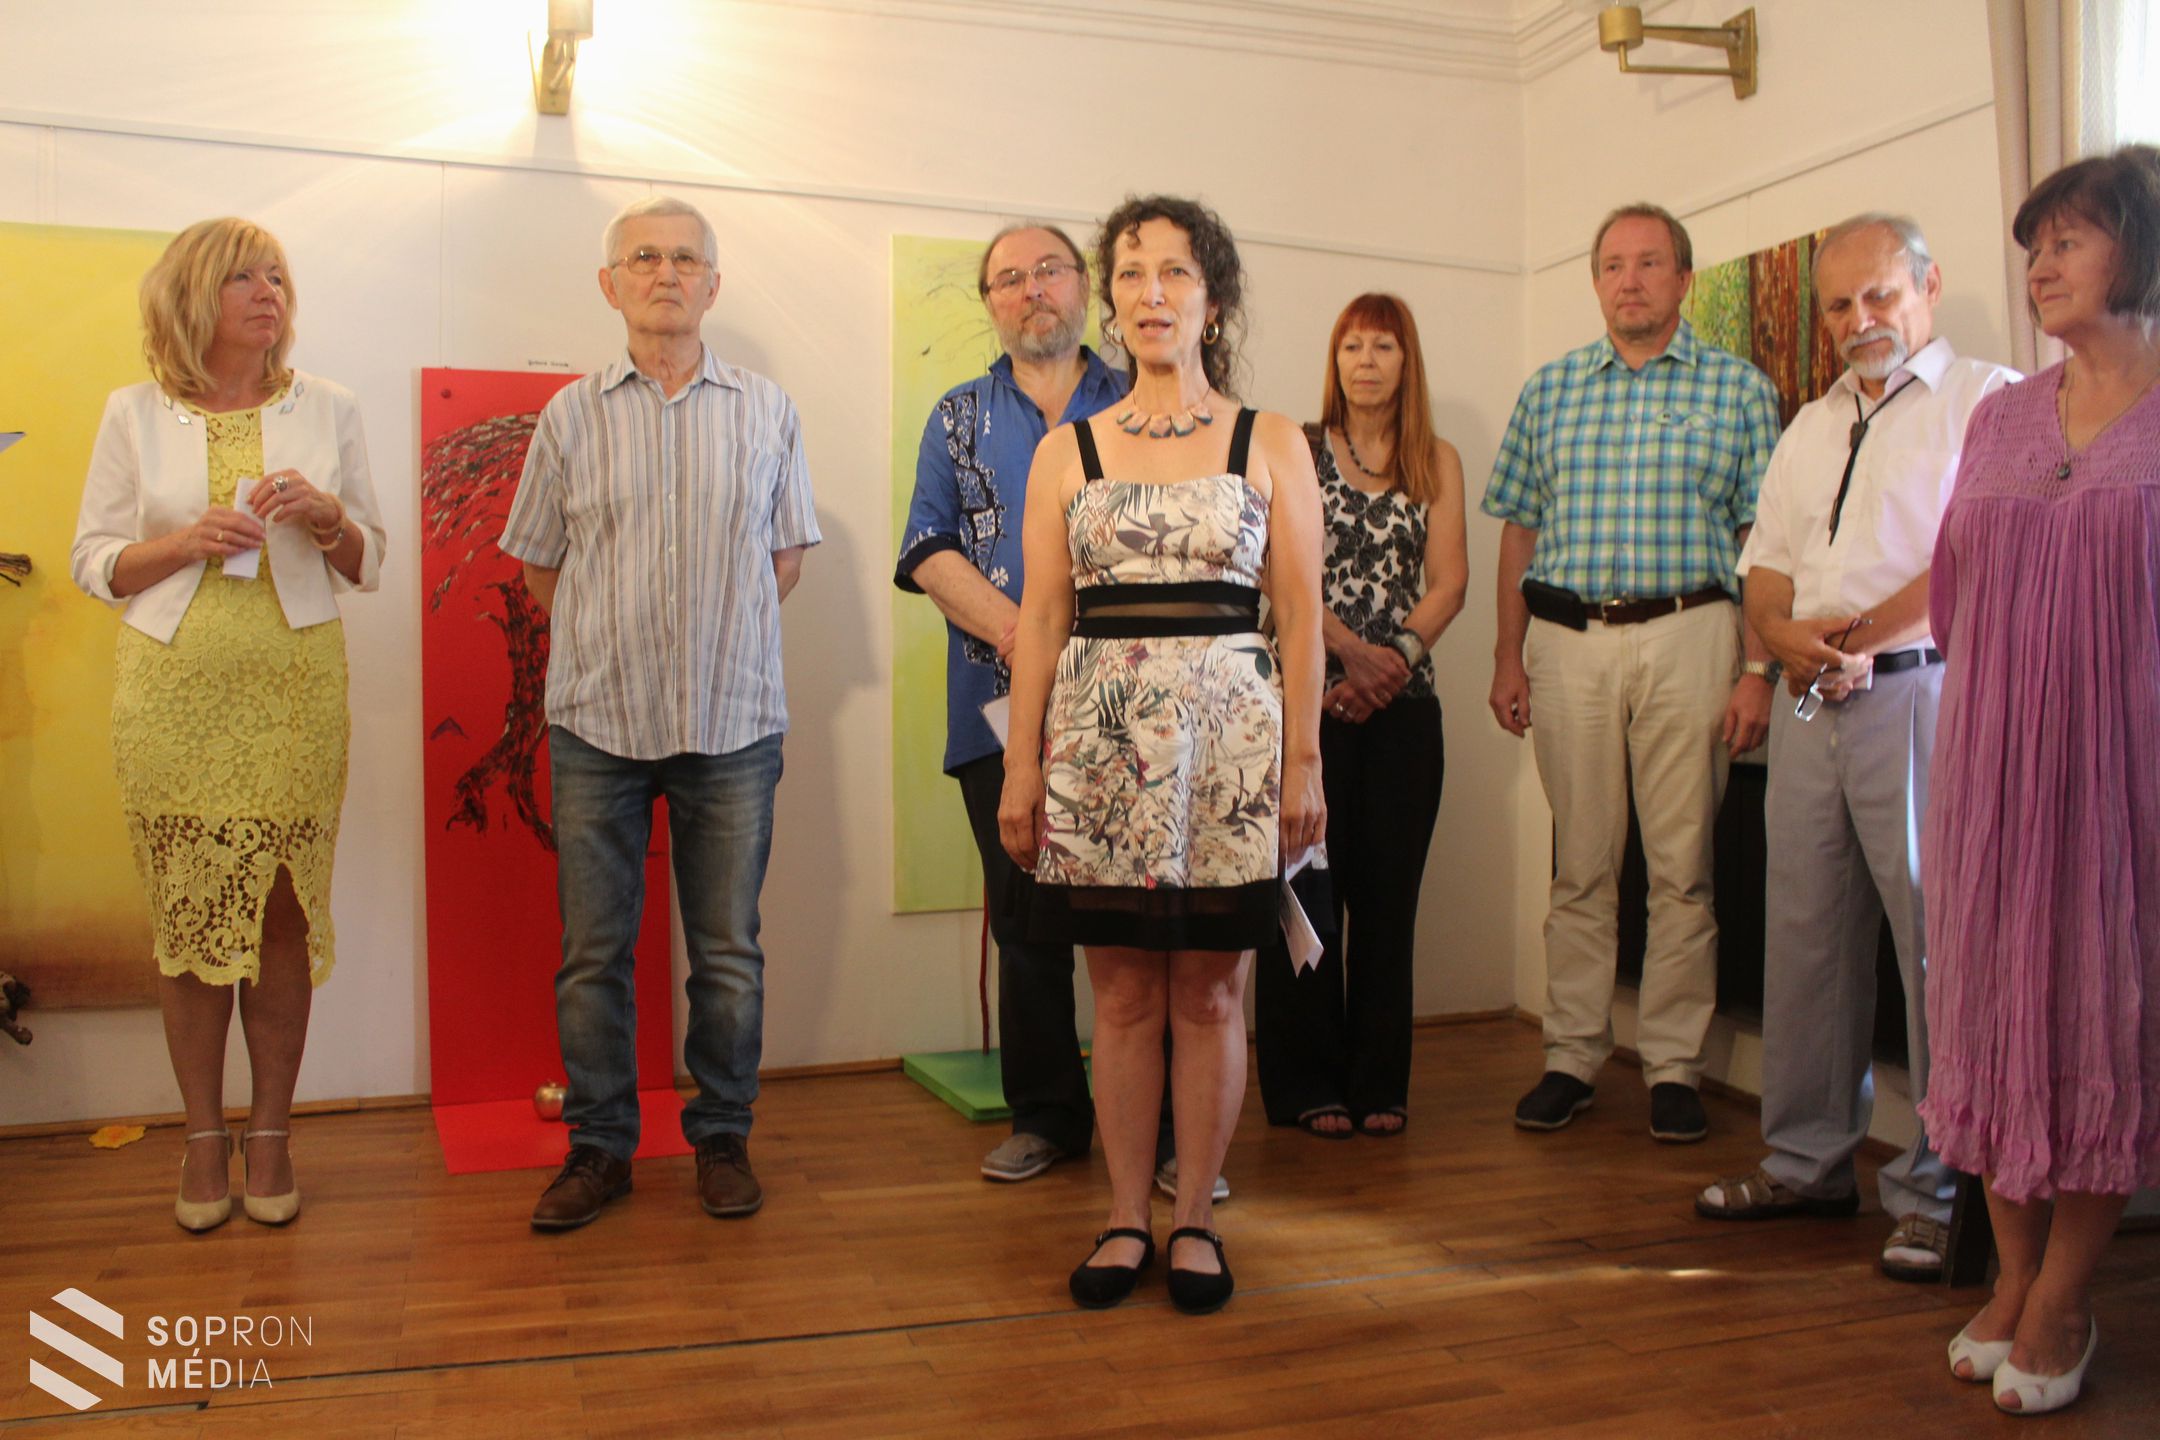 A Soproni Képzőművészeti Társaság Nemzetközi Alkotótáborának zárókiállítása 